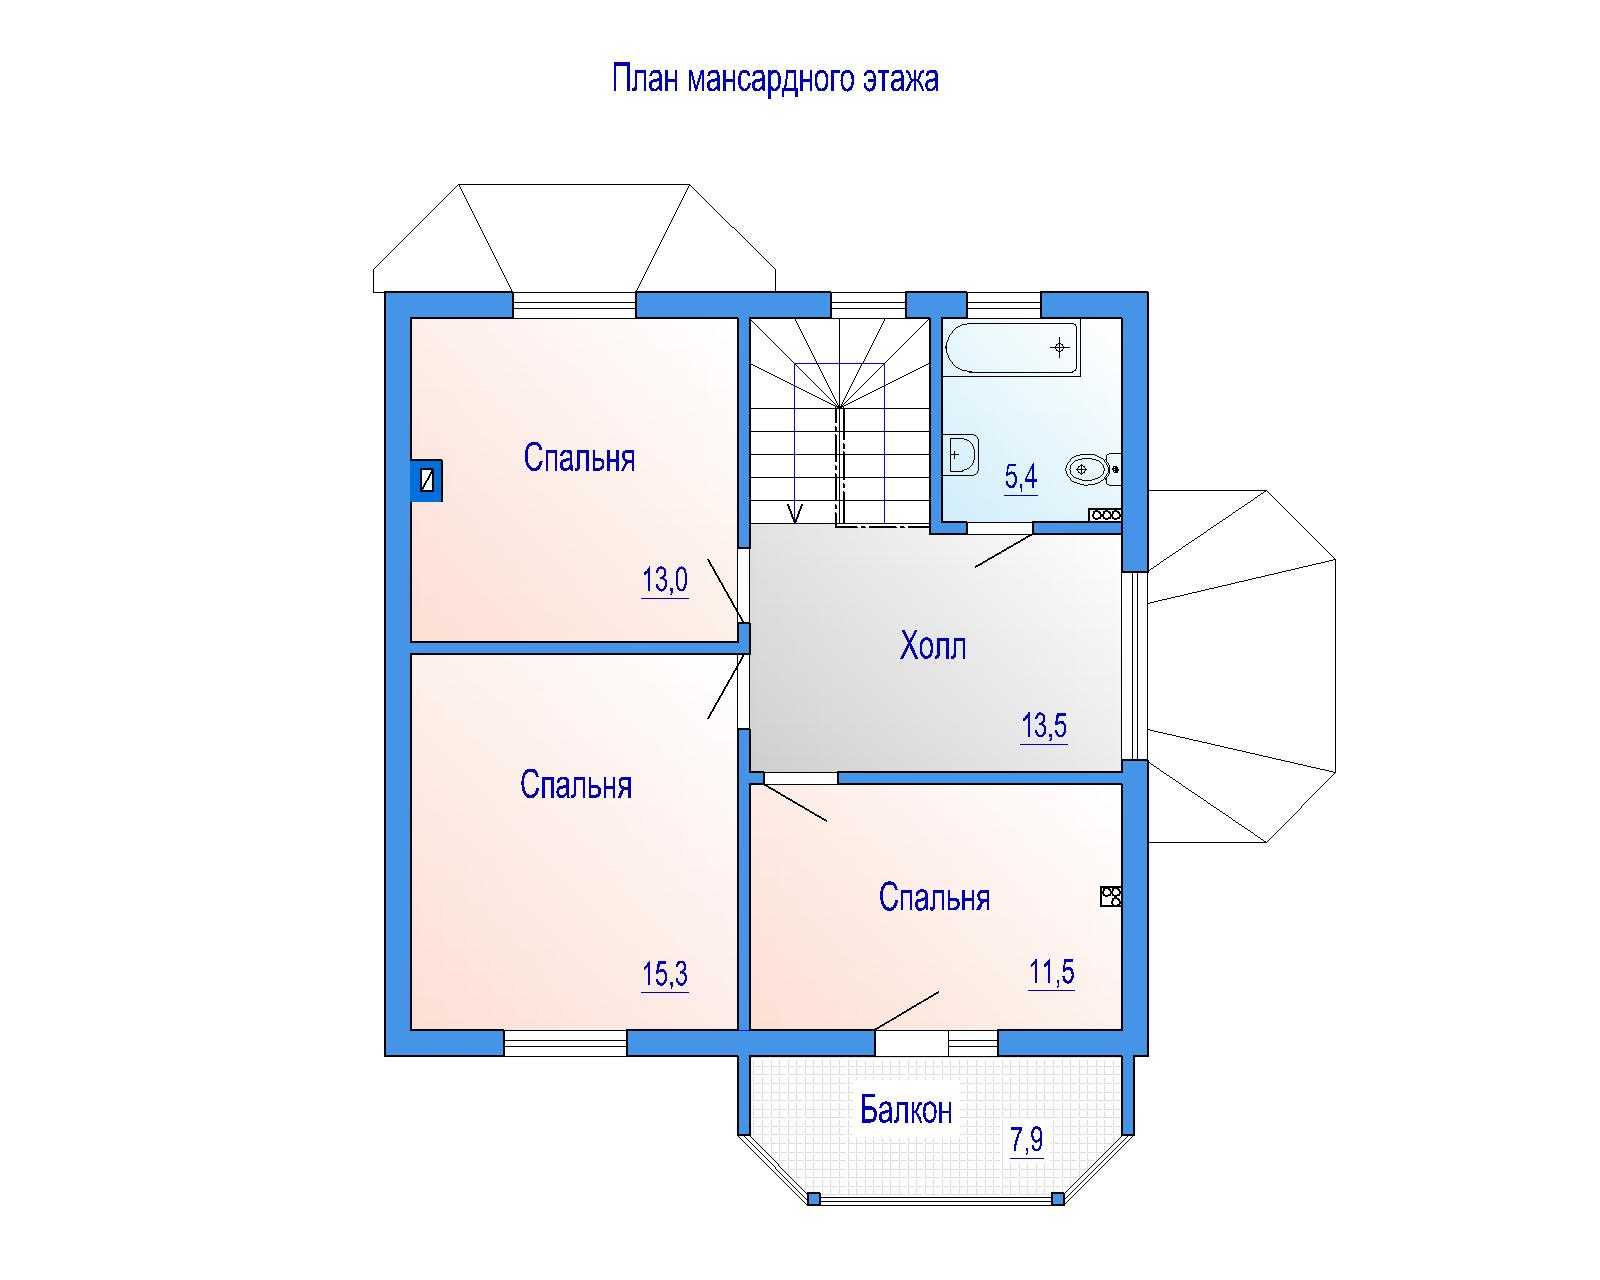 Мансарда в доме - что это такое, мансарда это этаж или нет, квартиры с мансардой: плюсы и минусы